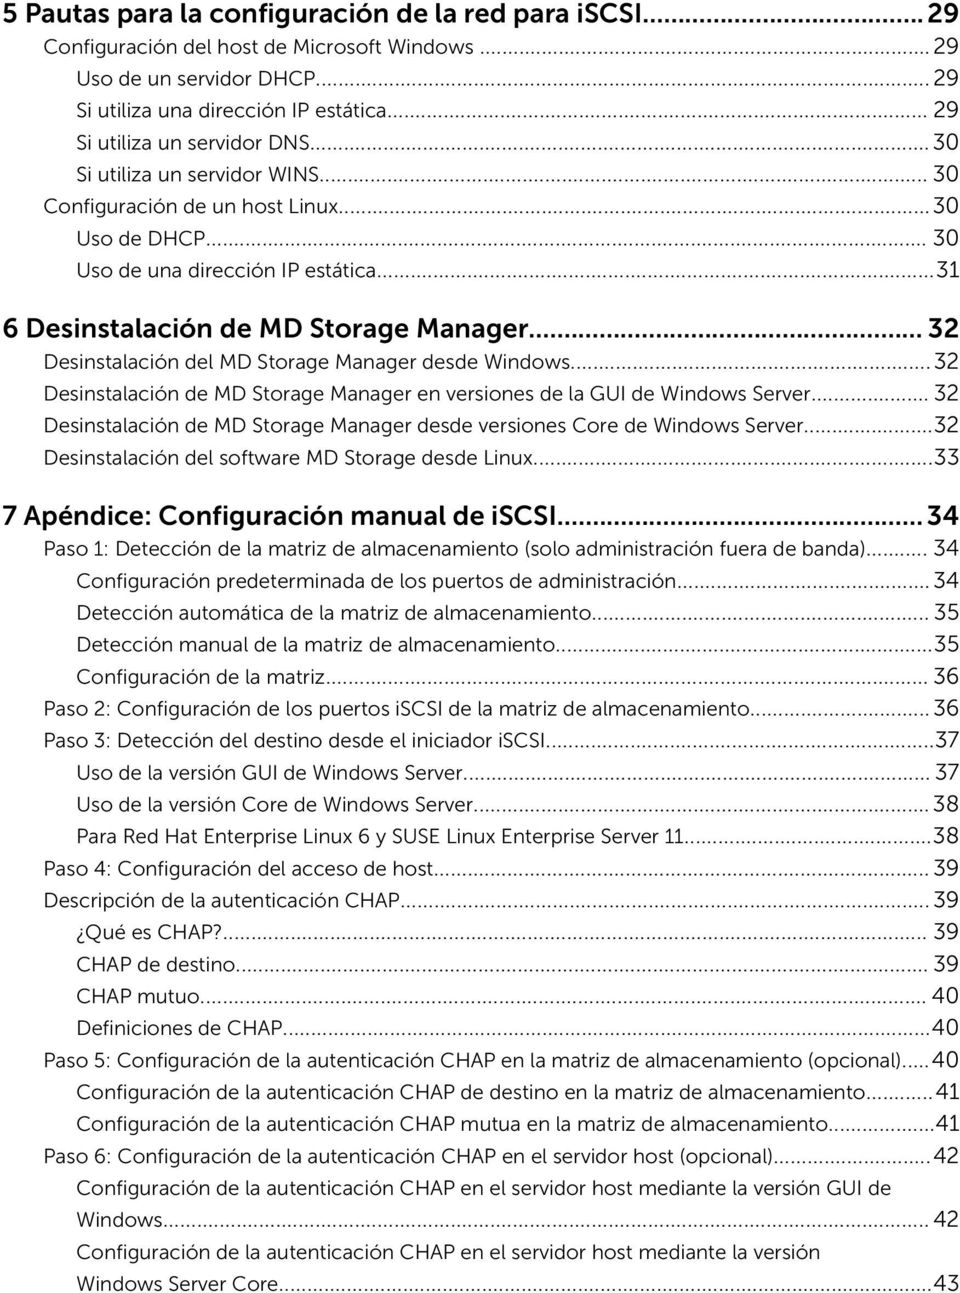 ..31 6 Desinstalación de MD Storage Manager... 32 Desinstalación del MD Storage Manager desde Windows...32 Desinstalación de MD Storage Manager en versiones de la GUI de Windows Server.